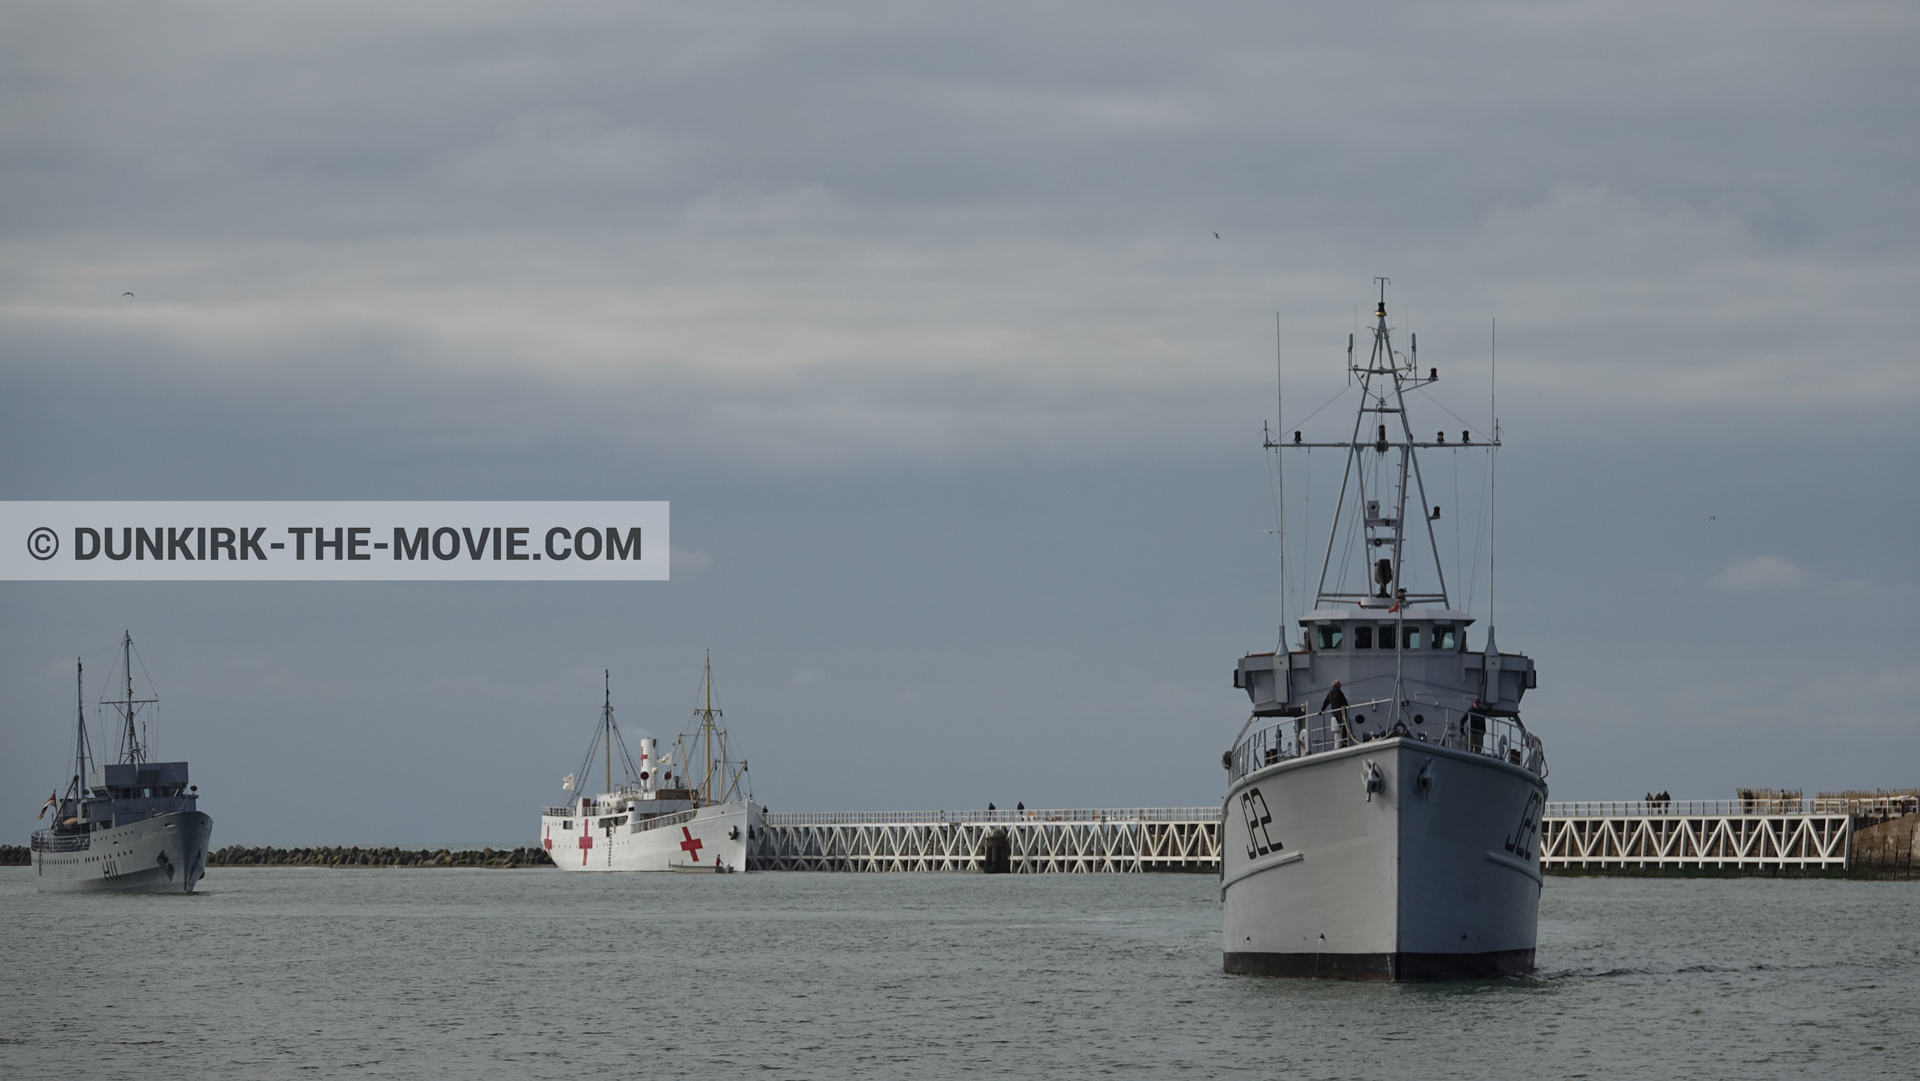 Fotos con barco, cielo nublado, H11 - MLV Castor, J22 -Hr.Ms. Naaldwijk, muelle del ESTE, mares calma, M/S Rogaland,  durante el rodaje de la película Dunkerque de Nolan